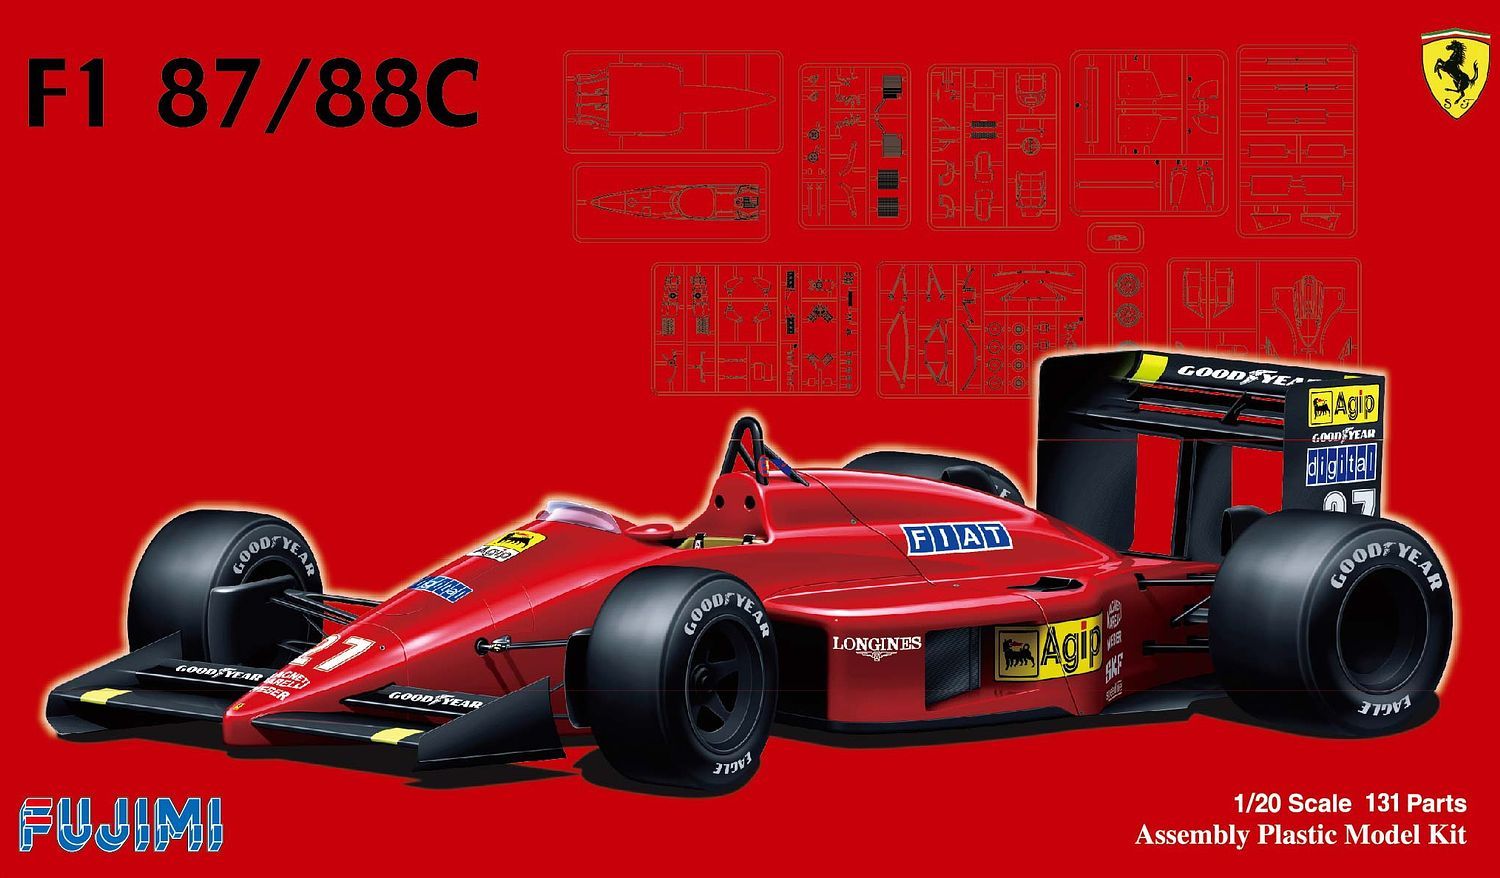 Fujimi 1/20: F1 Ferrari 87/88C 